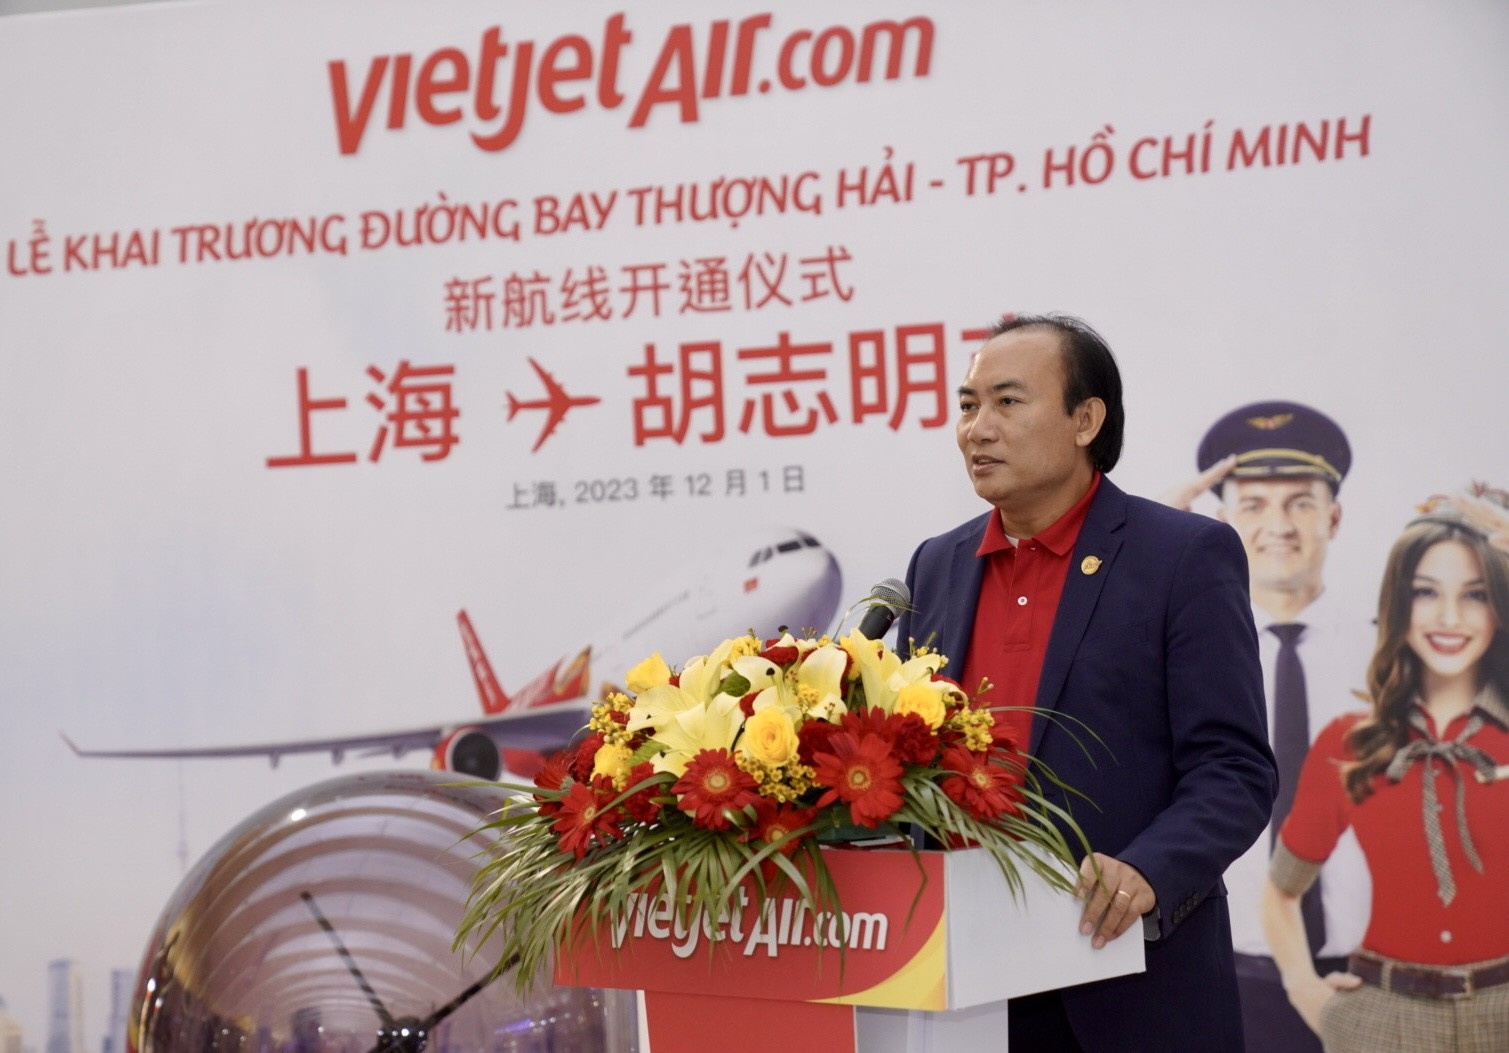 Tin vui: Vietjet vừa khai trương đường bay thẳng giữa Thượng Hải và TP. Hồ Chí Minh - Ảnh 5.